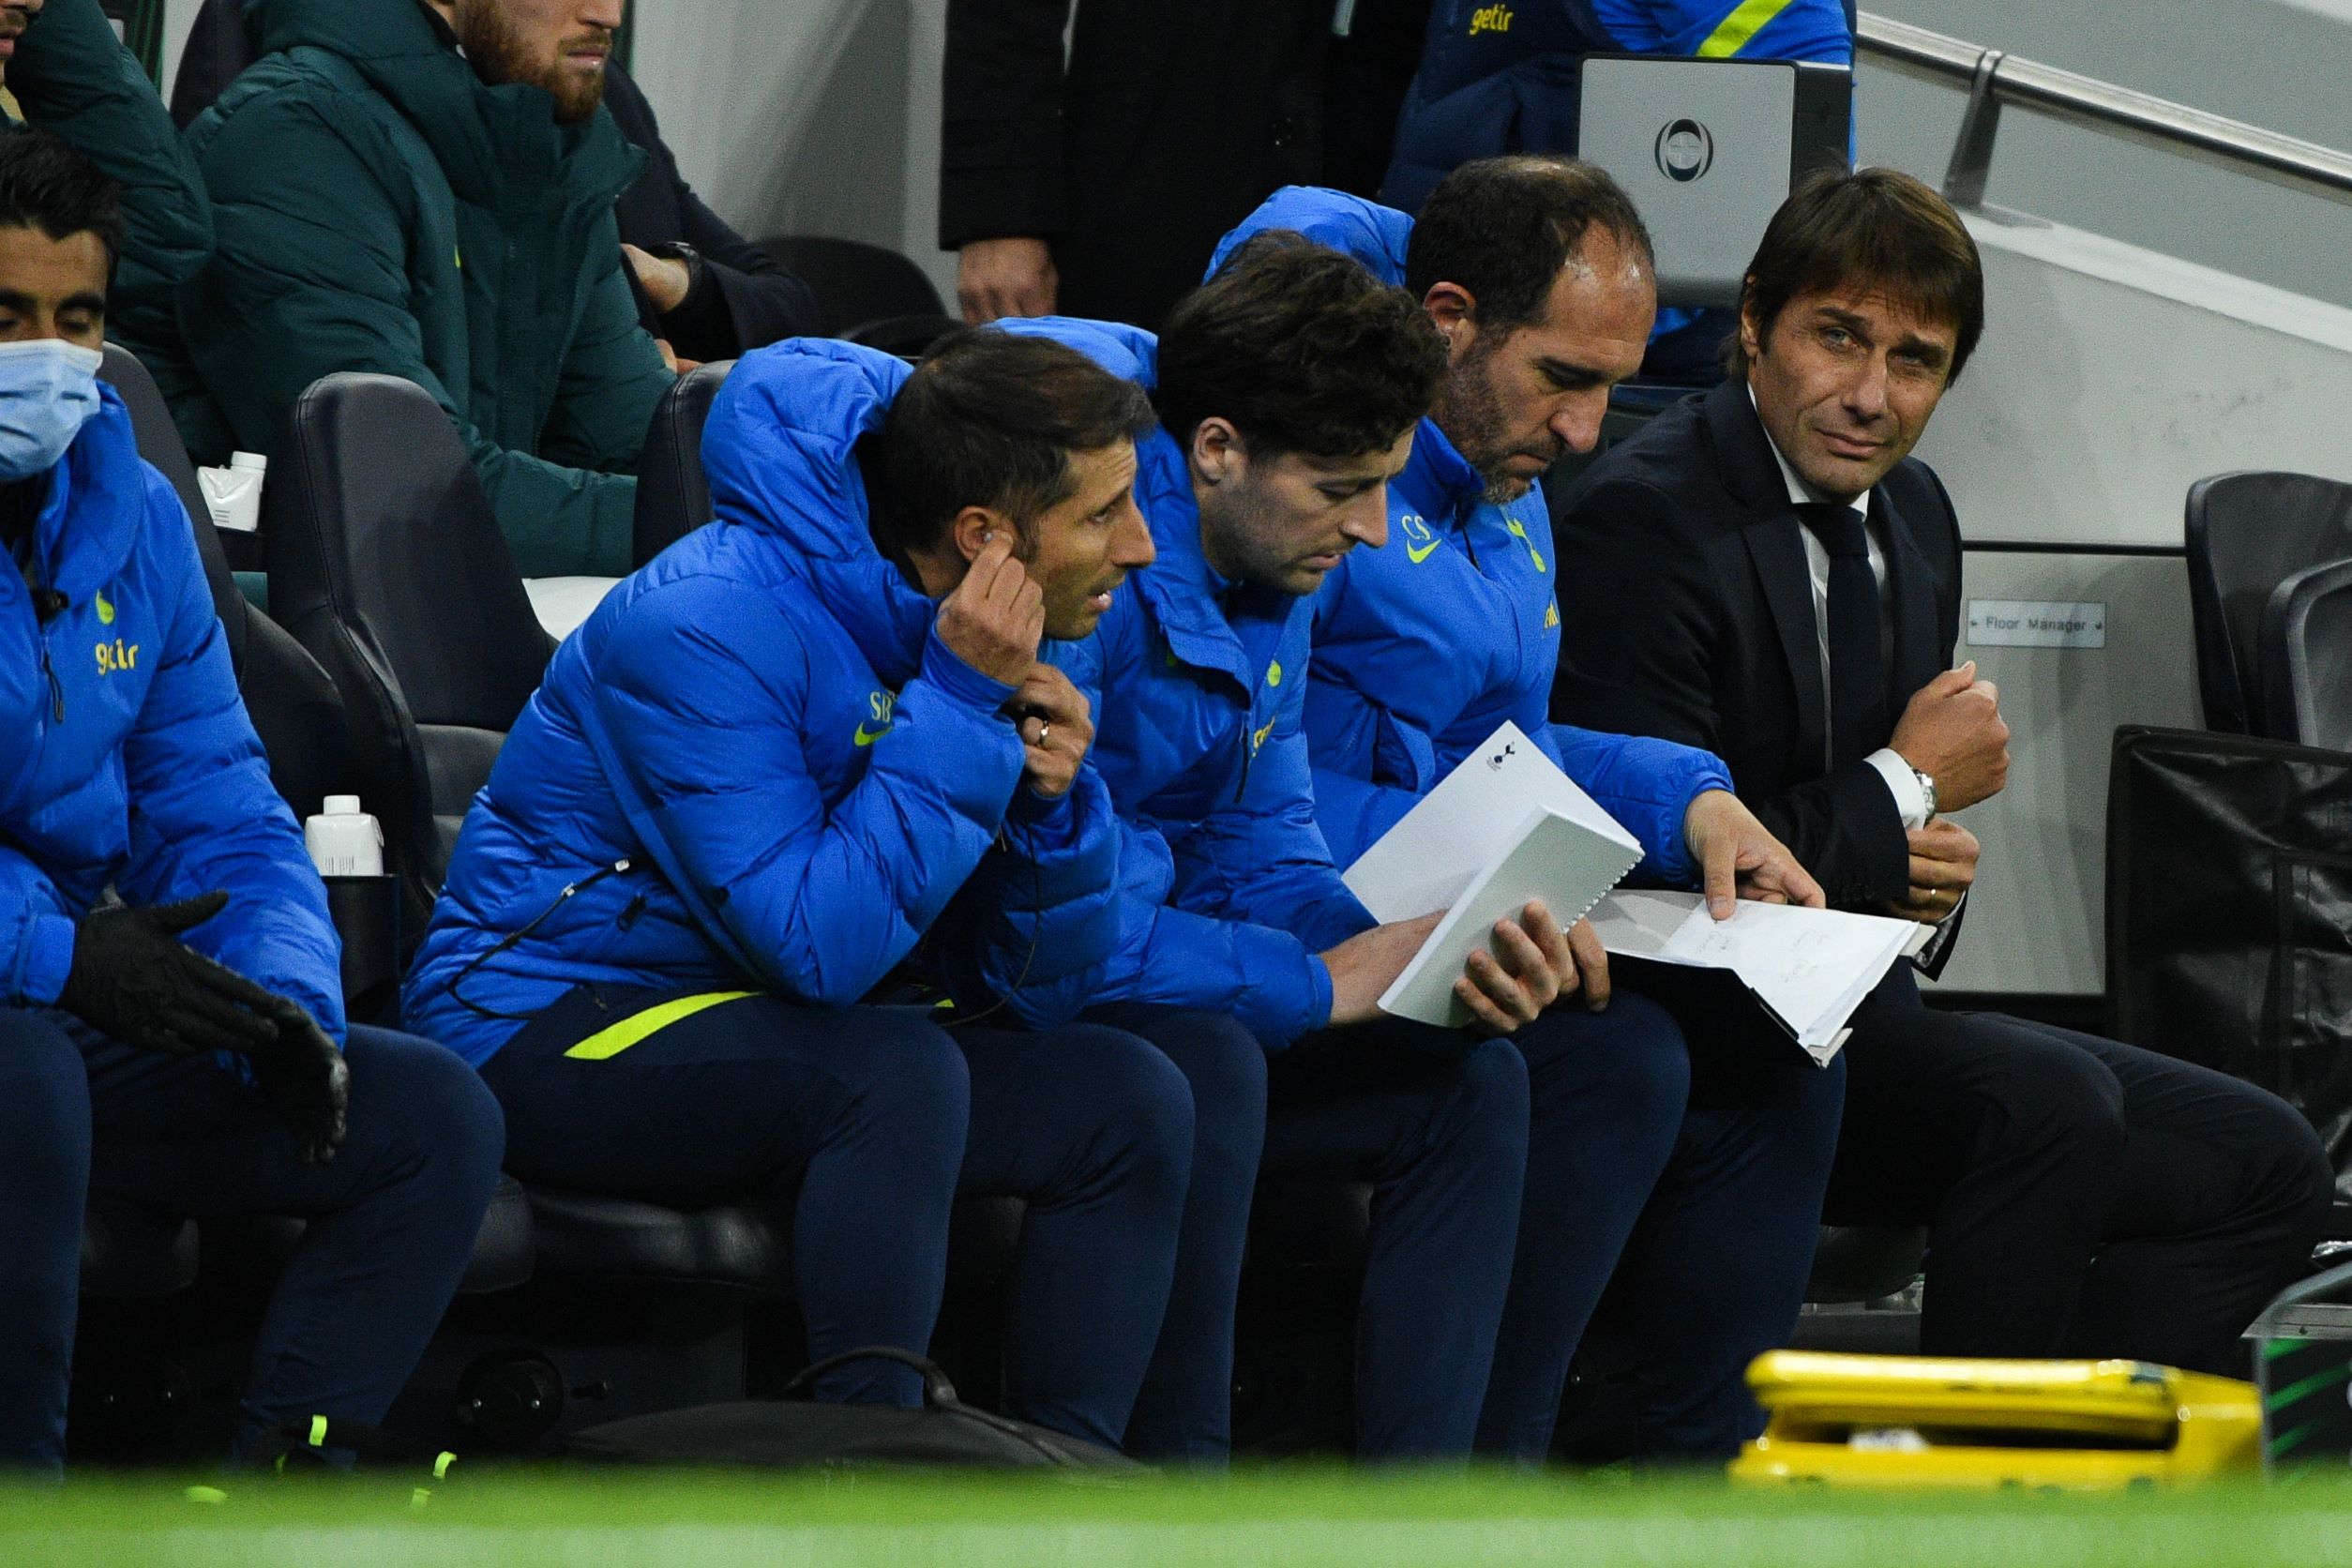 Antonio Conte na ławce trenerskiej Tottenhamu - kupon PL 21.11. Totalbet